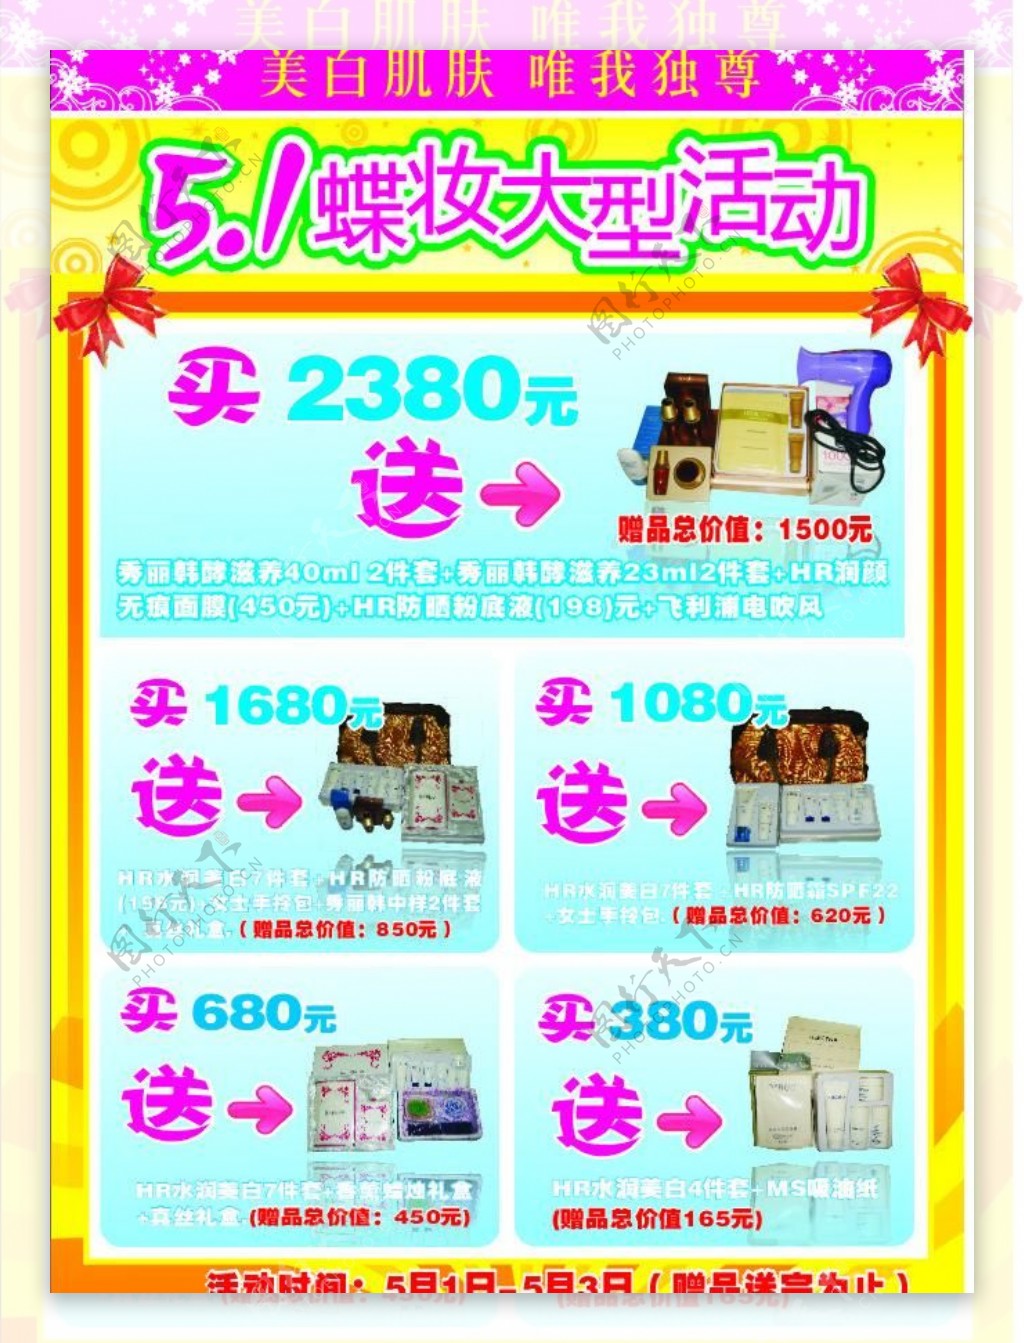 51蝶妆活动海报图片